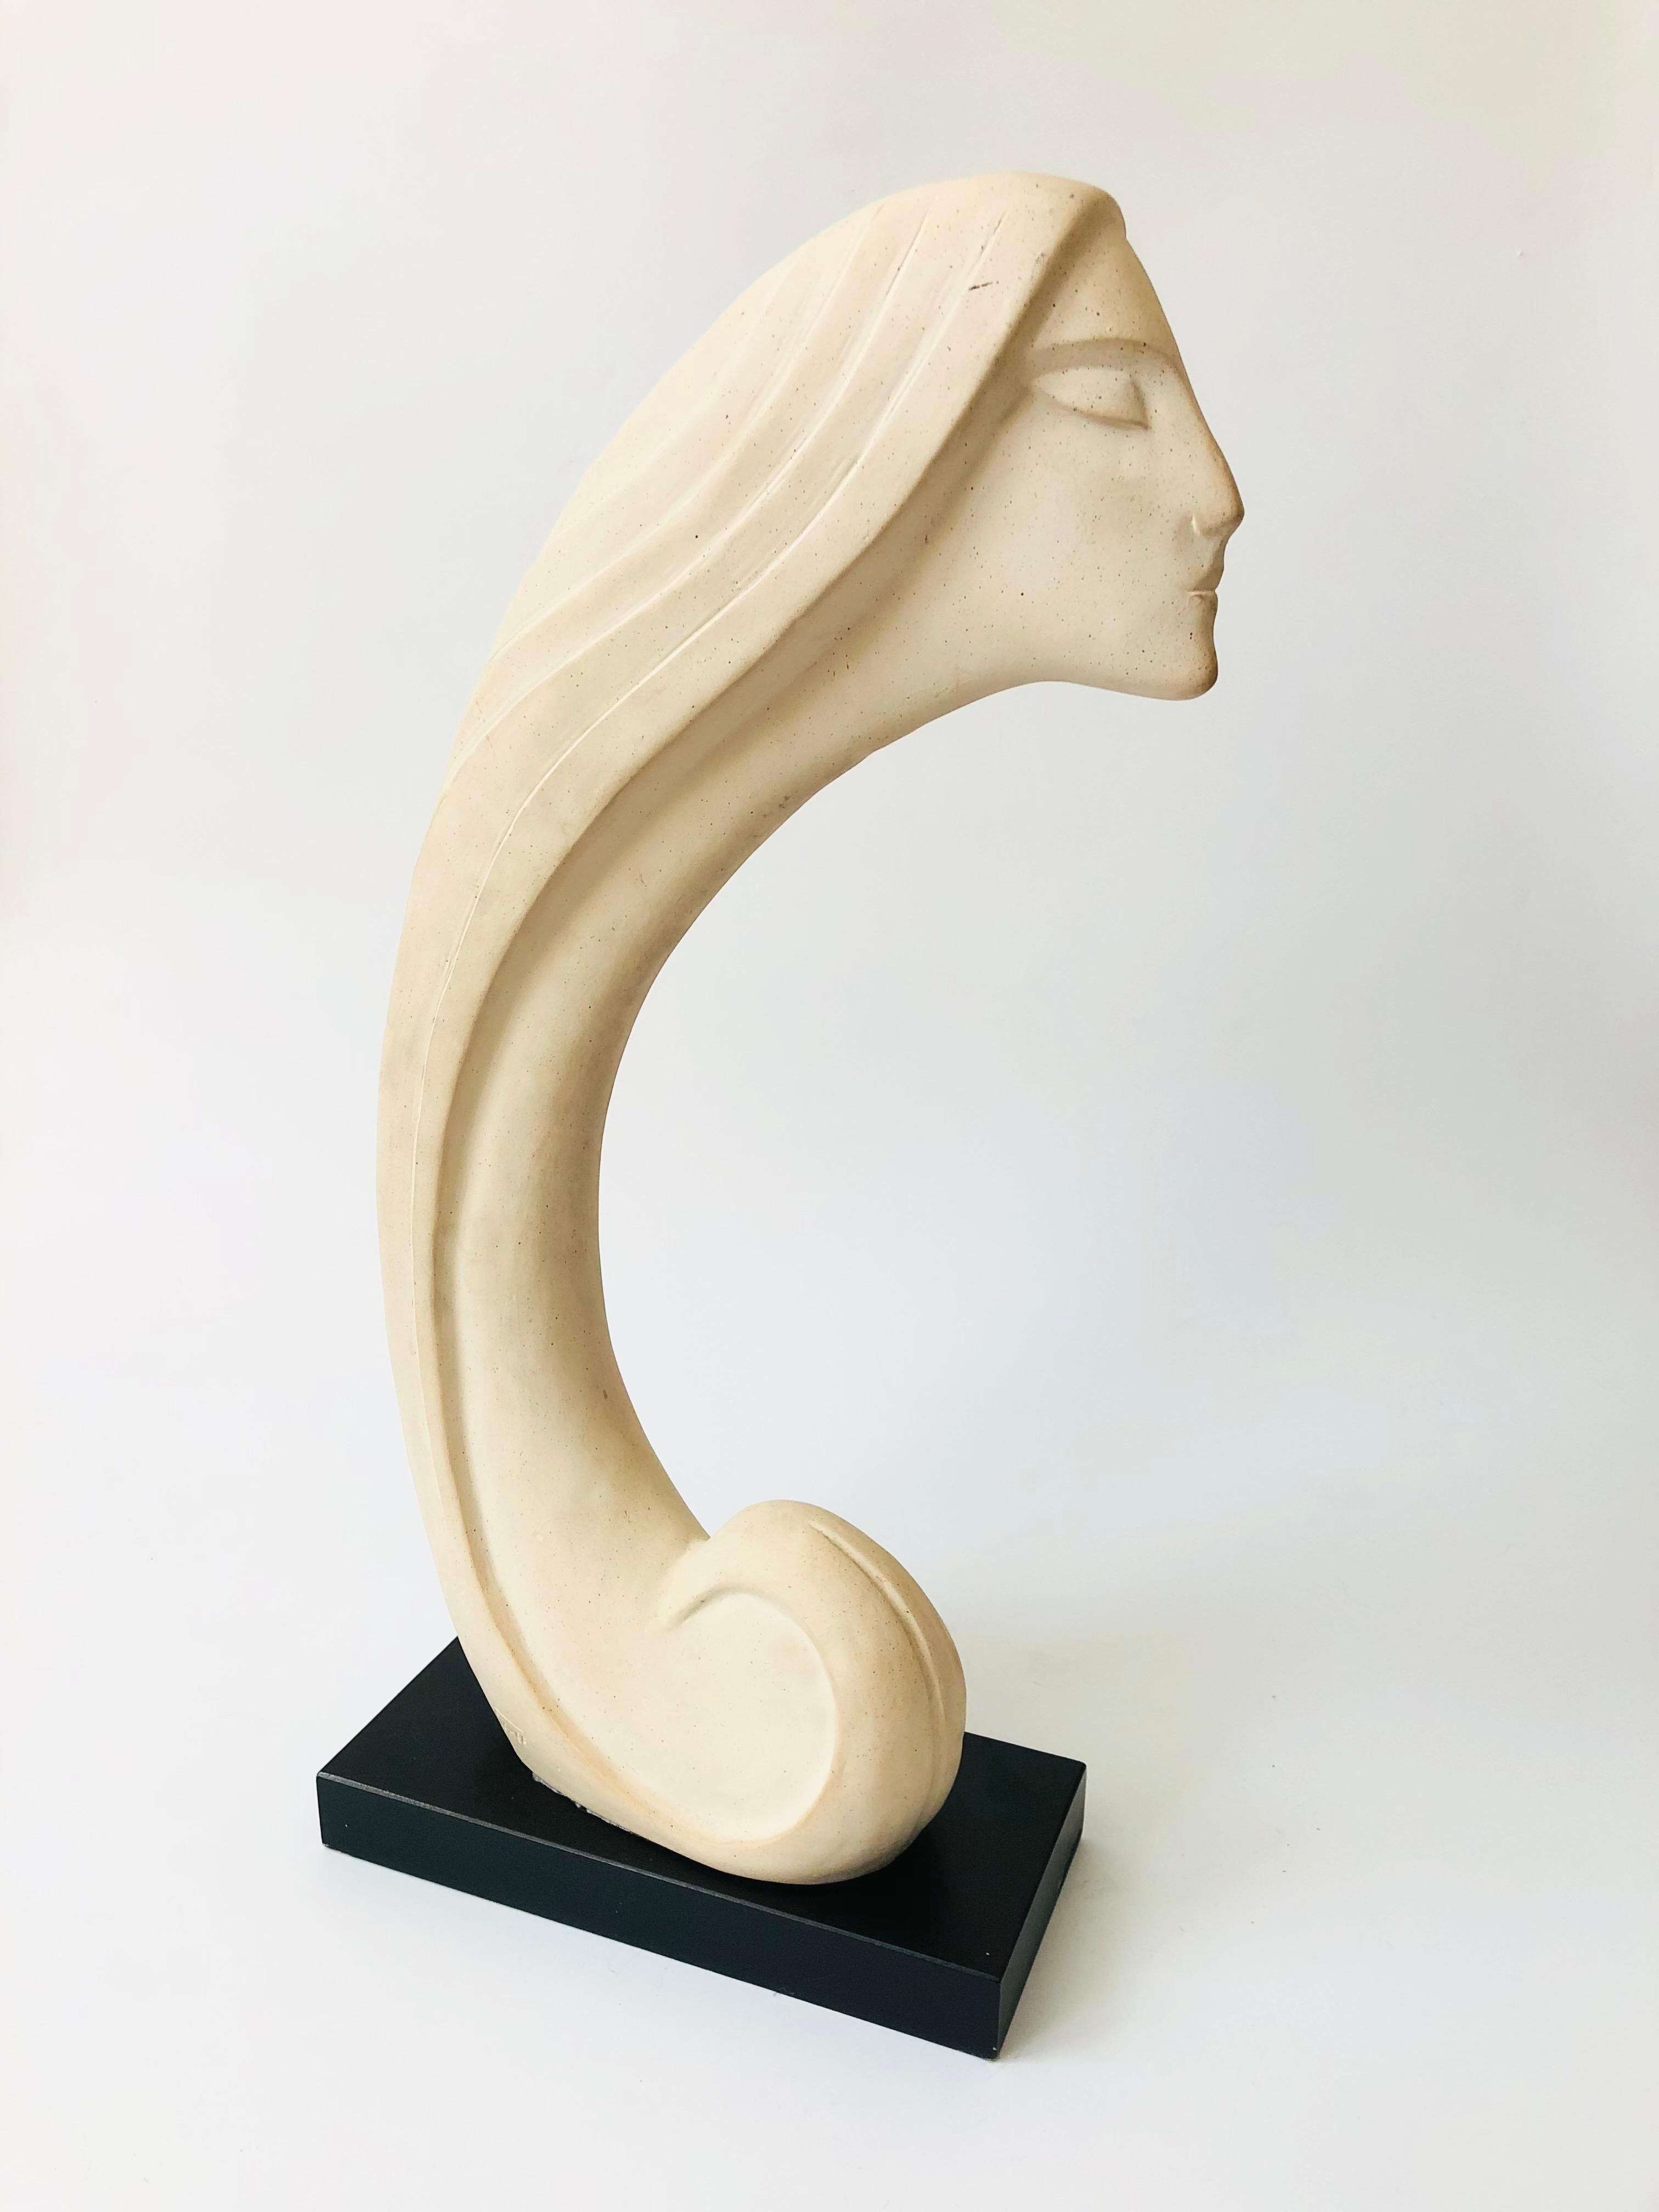 The Searcher Sculpture, sculpture vintage de David Fisher, Austin Productions, 1984 6